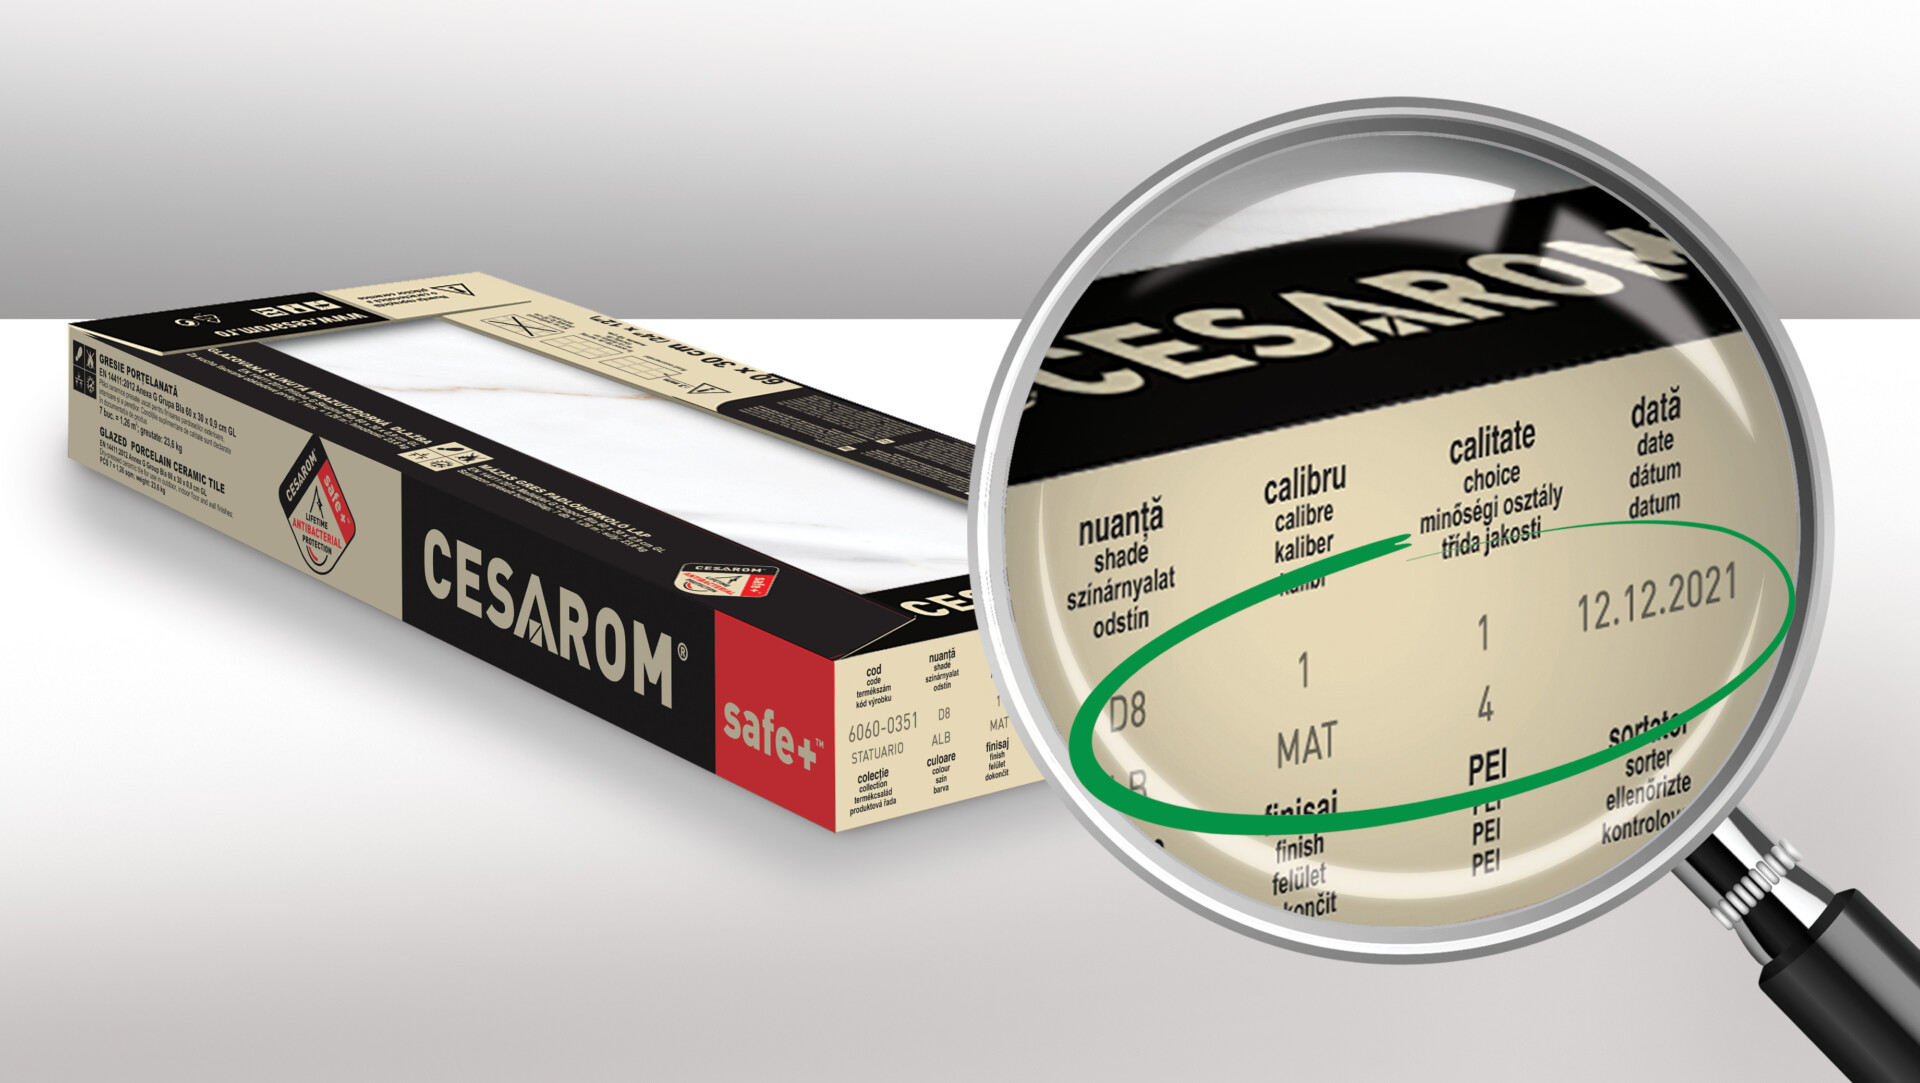 Imagine cutie gresie CESAROM, detliu specificații esențiale produse CESAROM.
Nuanță, calibru, dată de prducție